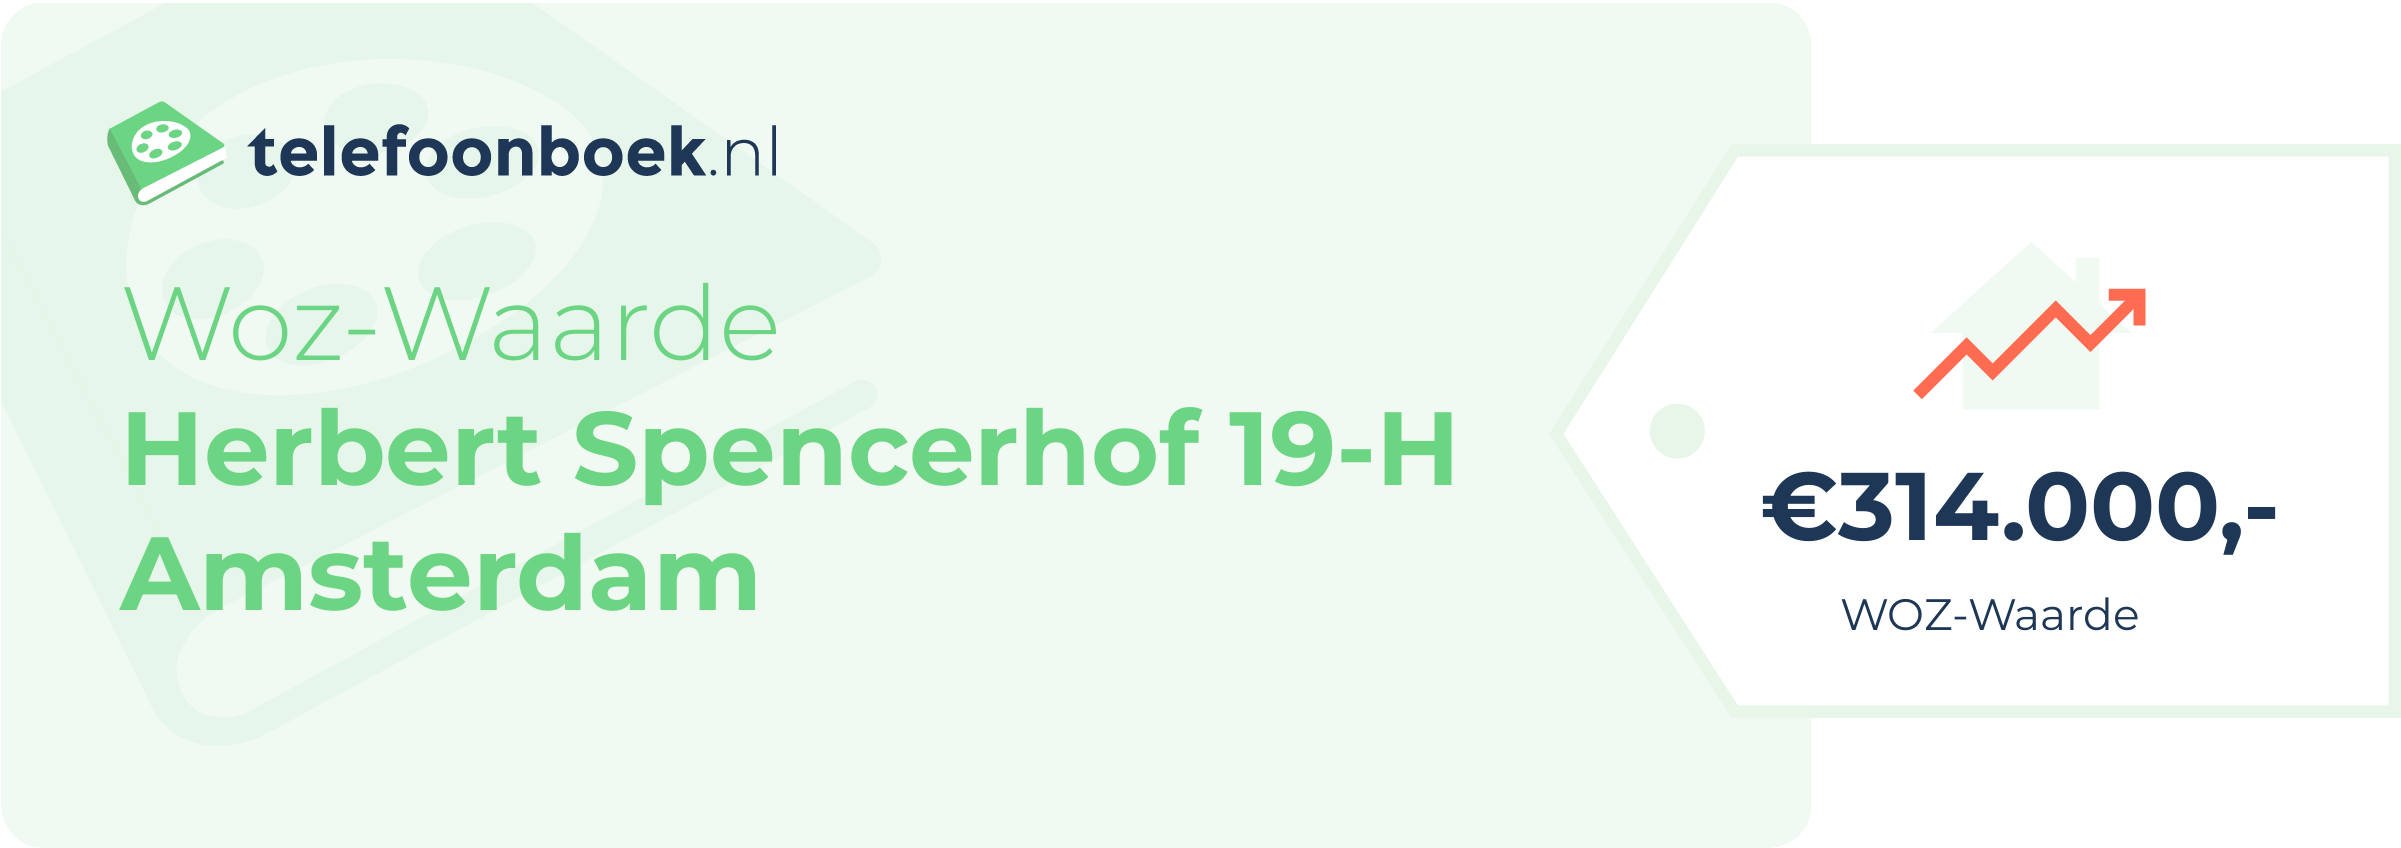 WOZ-waarde Herbert Spencerhof 19-H Amsterdam